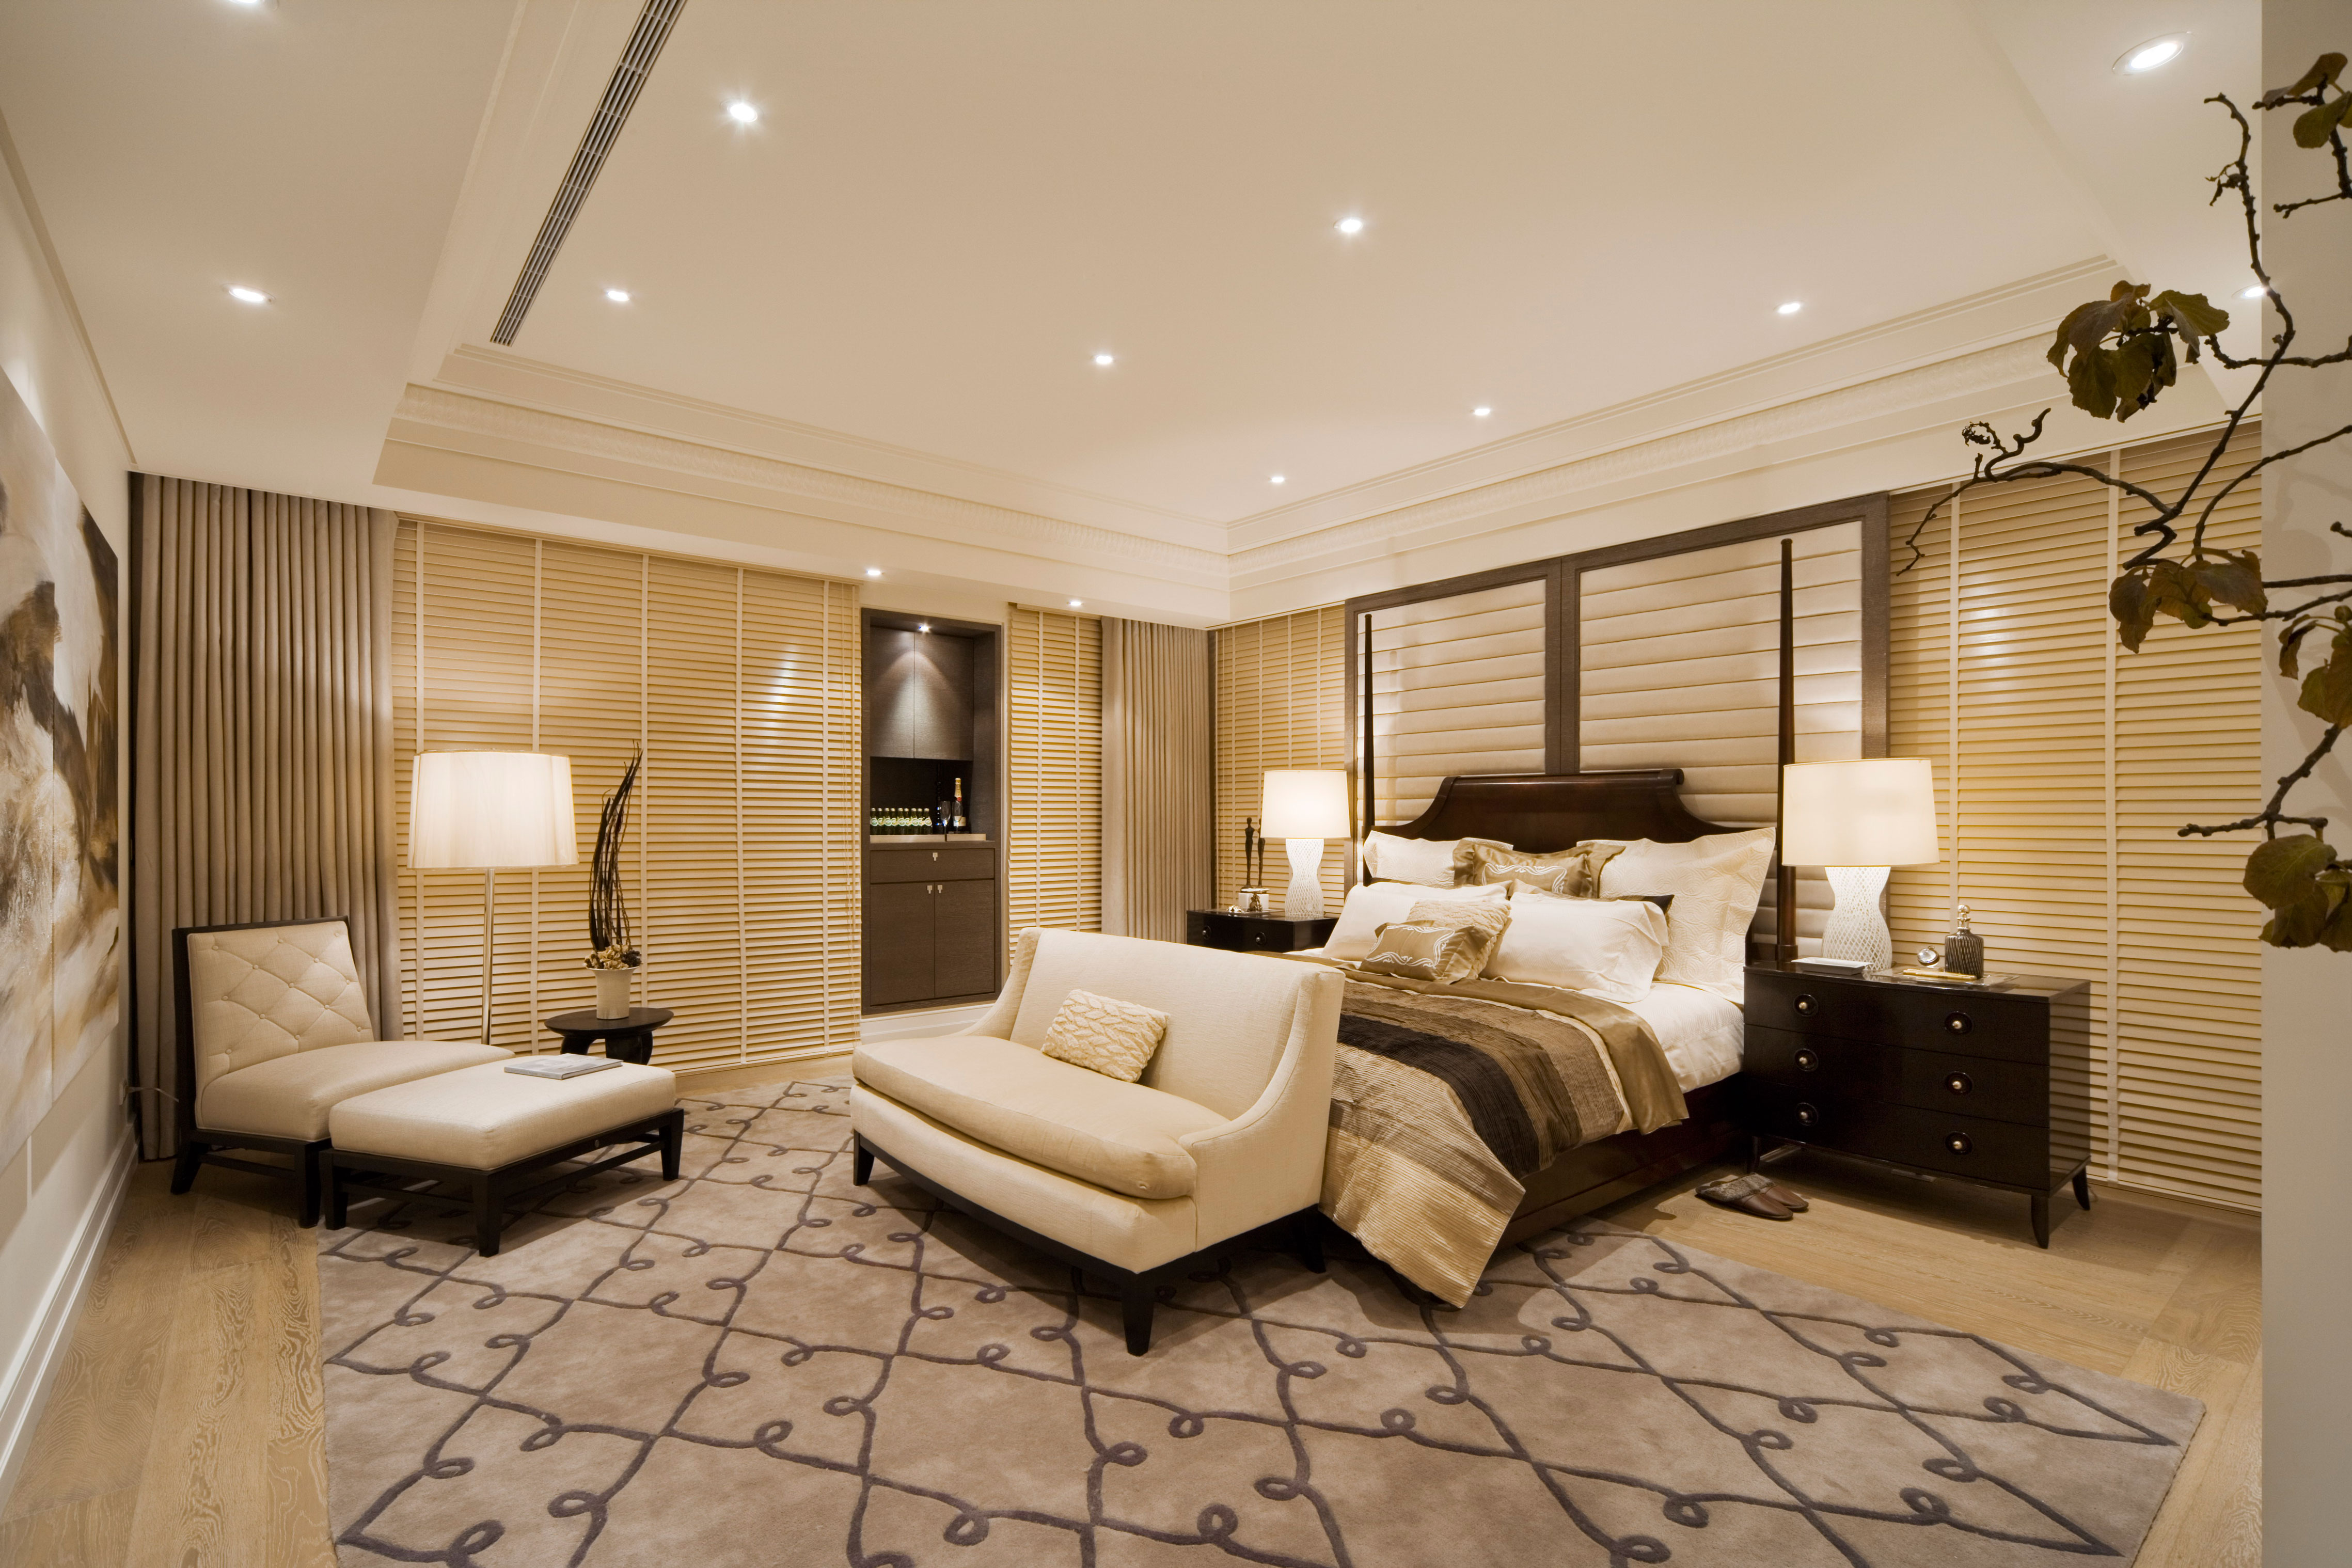 简欧 红山世家 装修 设计 案例 三居 卧室图片来自北京高端公寓装修设计在简欧风格红山世家装修设计案例的分享